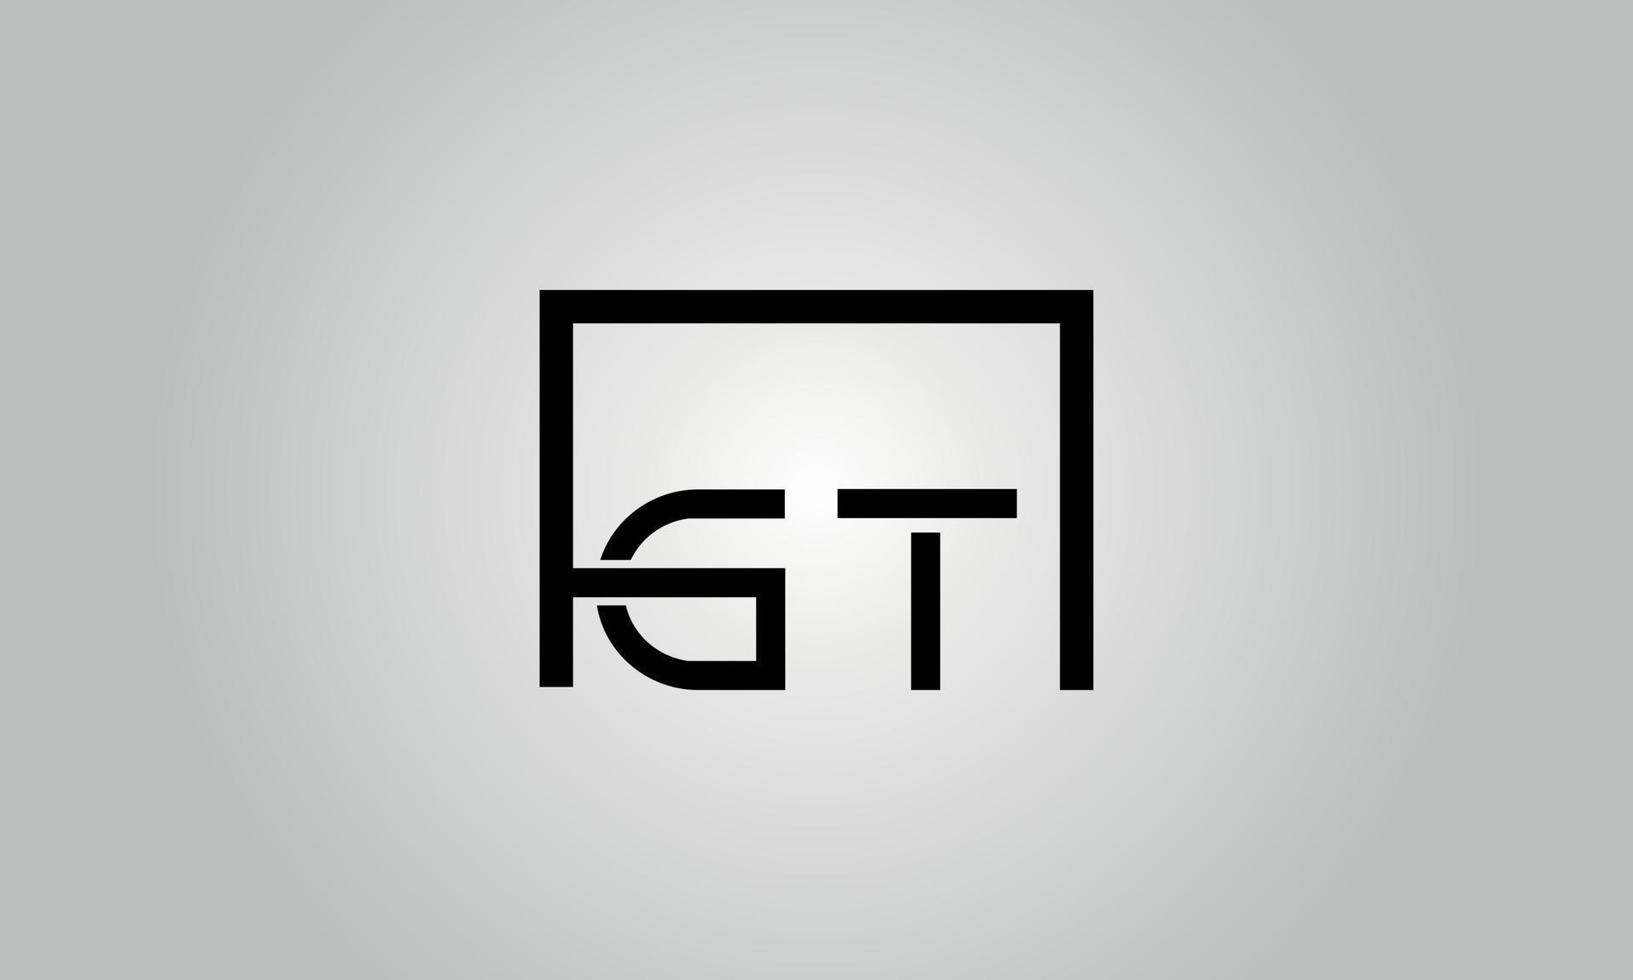 diseño del logotipo de la letra gt. logotipo de gt con forma cuadrada en colores negros vector plantilla de vector libre.